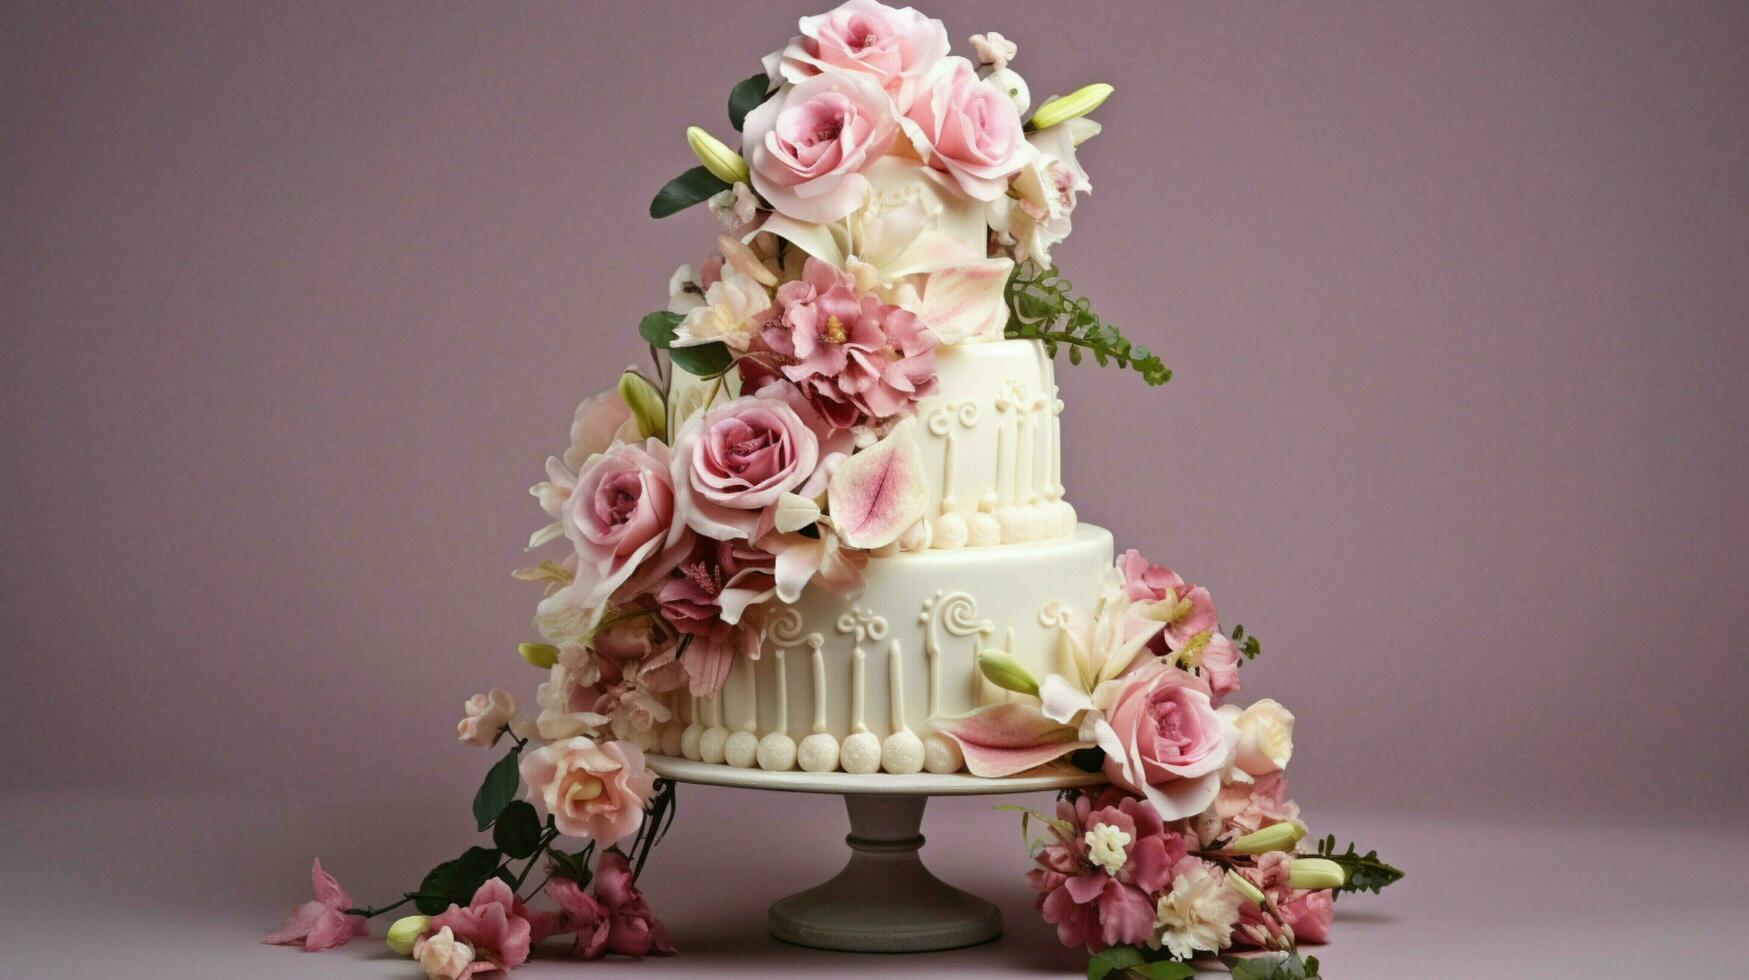 fresh bouquet sweet love wedding celebration with cake photo